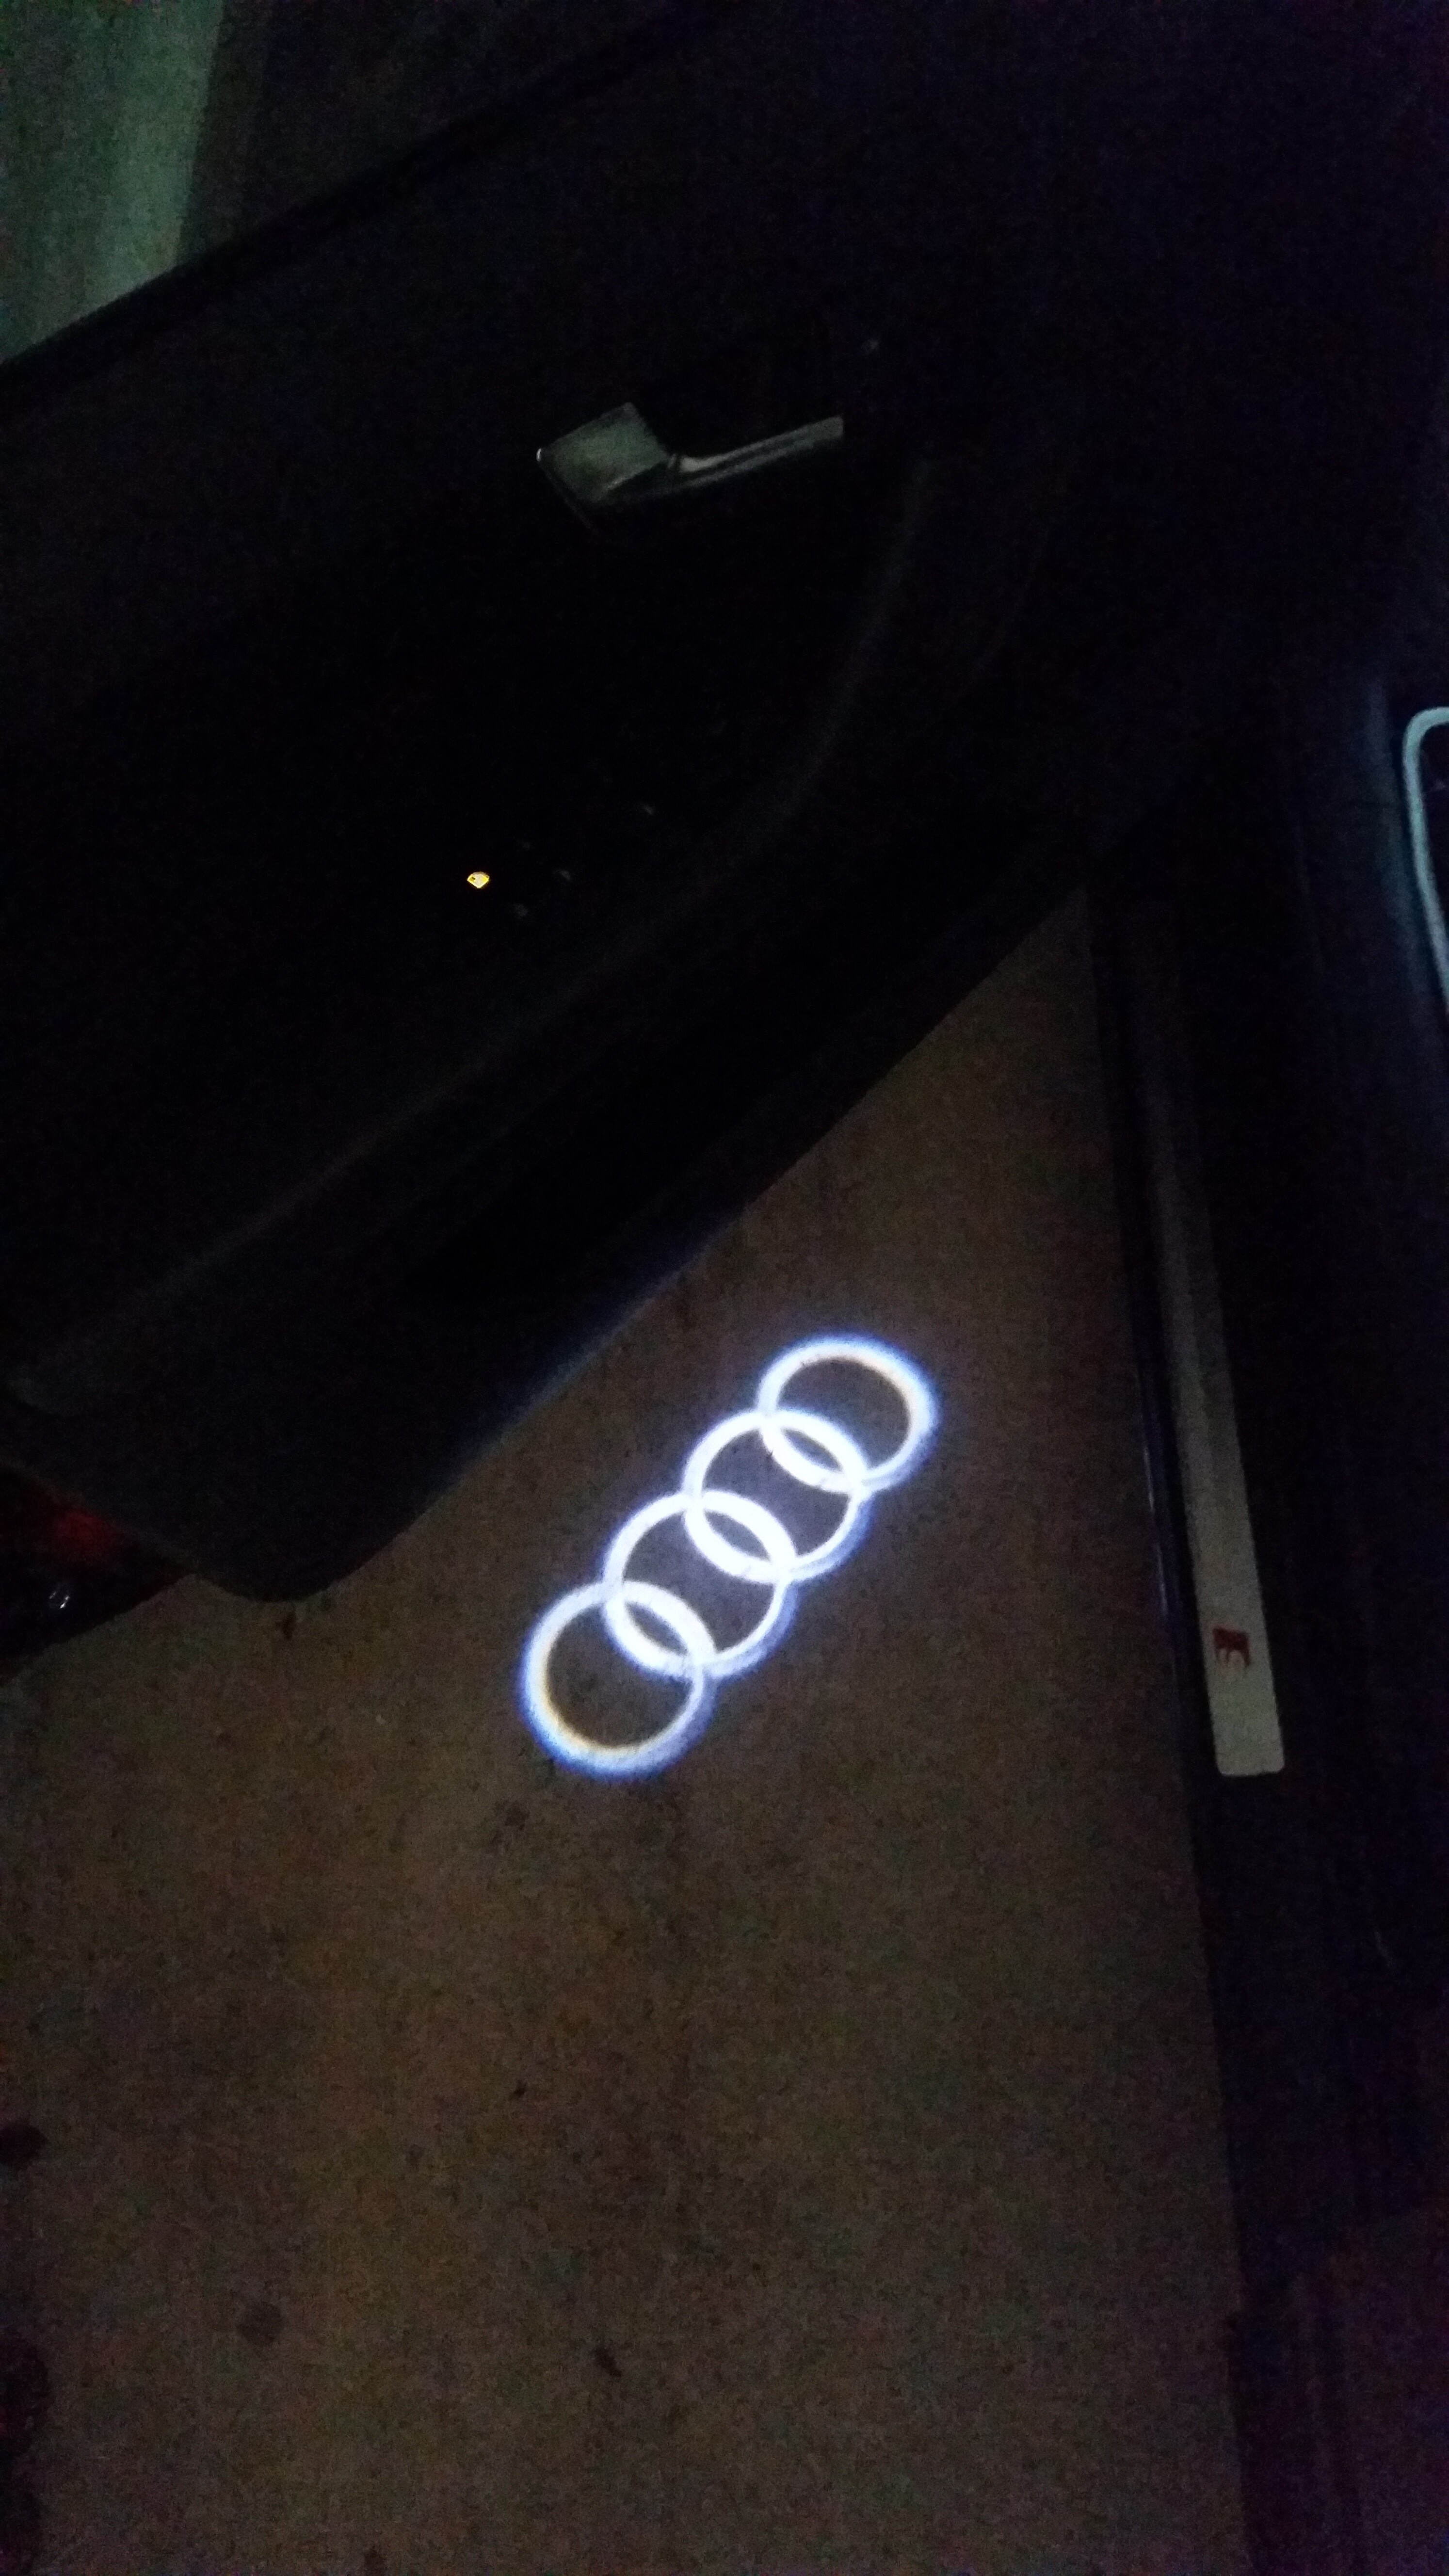 8P] S-Line Einstiegsbeleuchtung Audi Logo - Allgemeine Fragen (8P